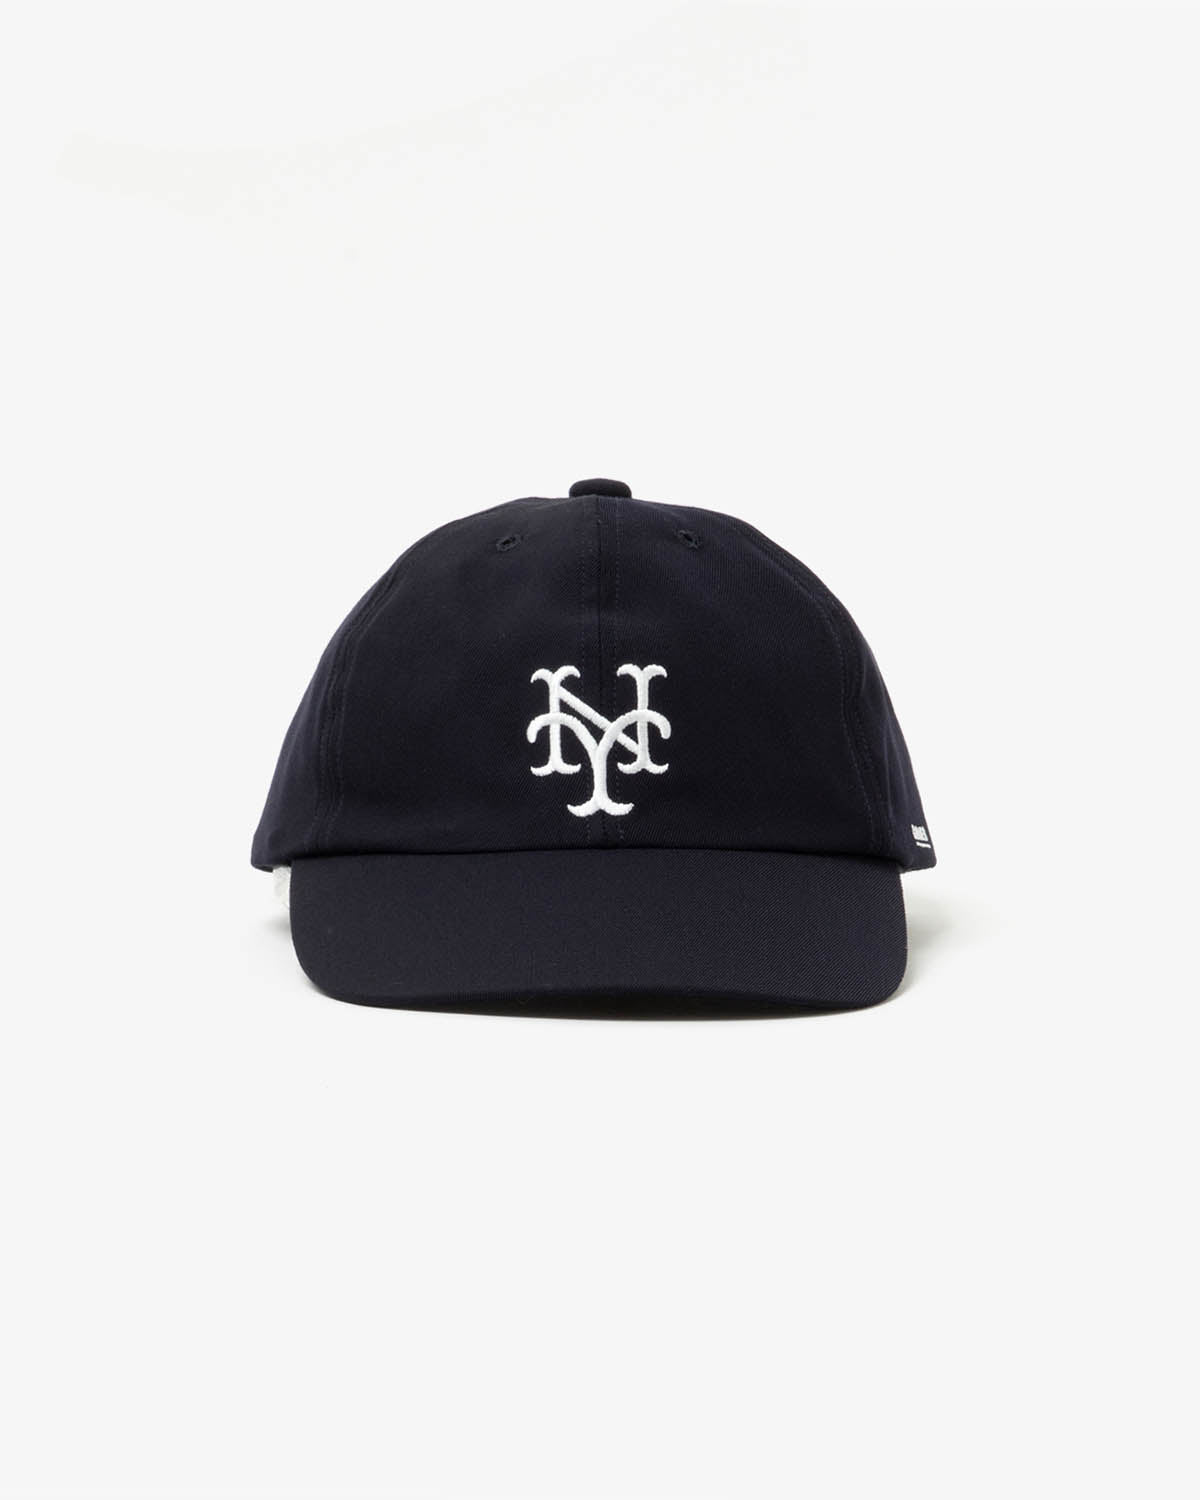 NY CUBANS CAP (WOMEN'S)